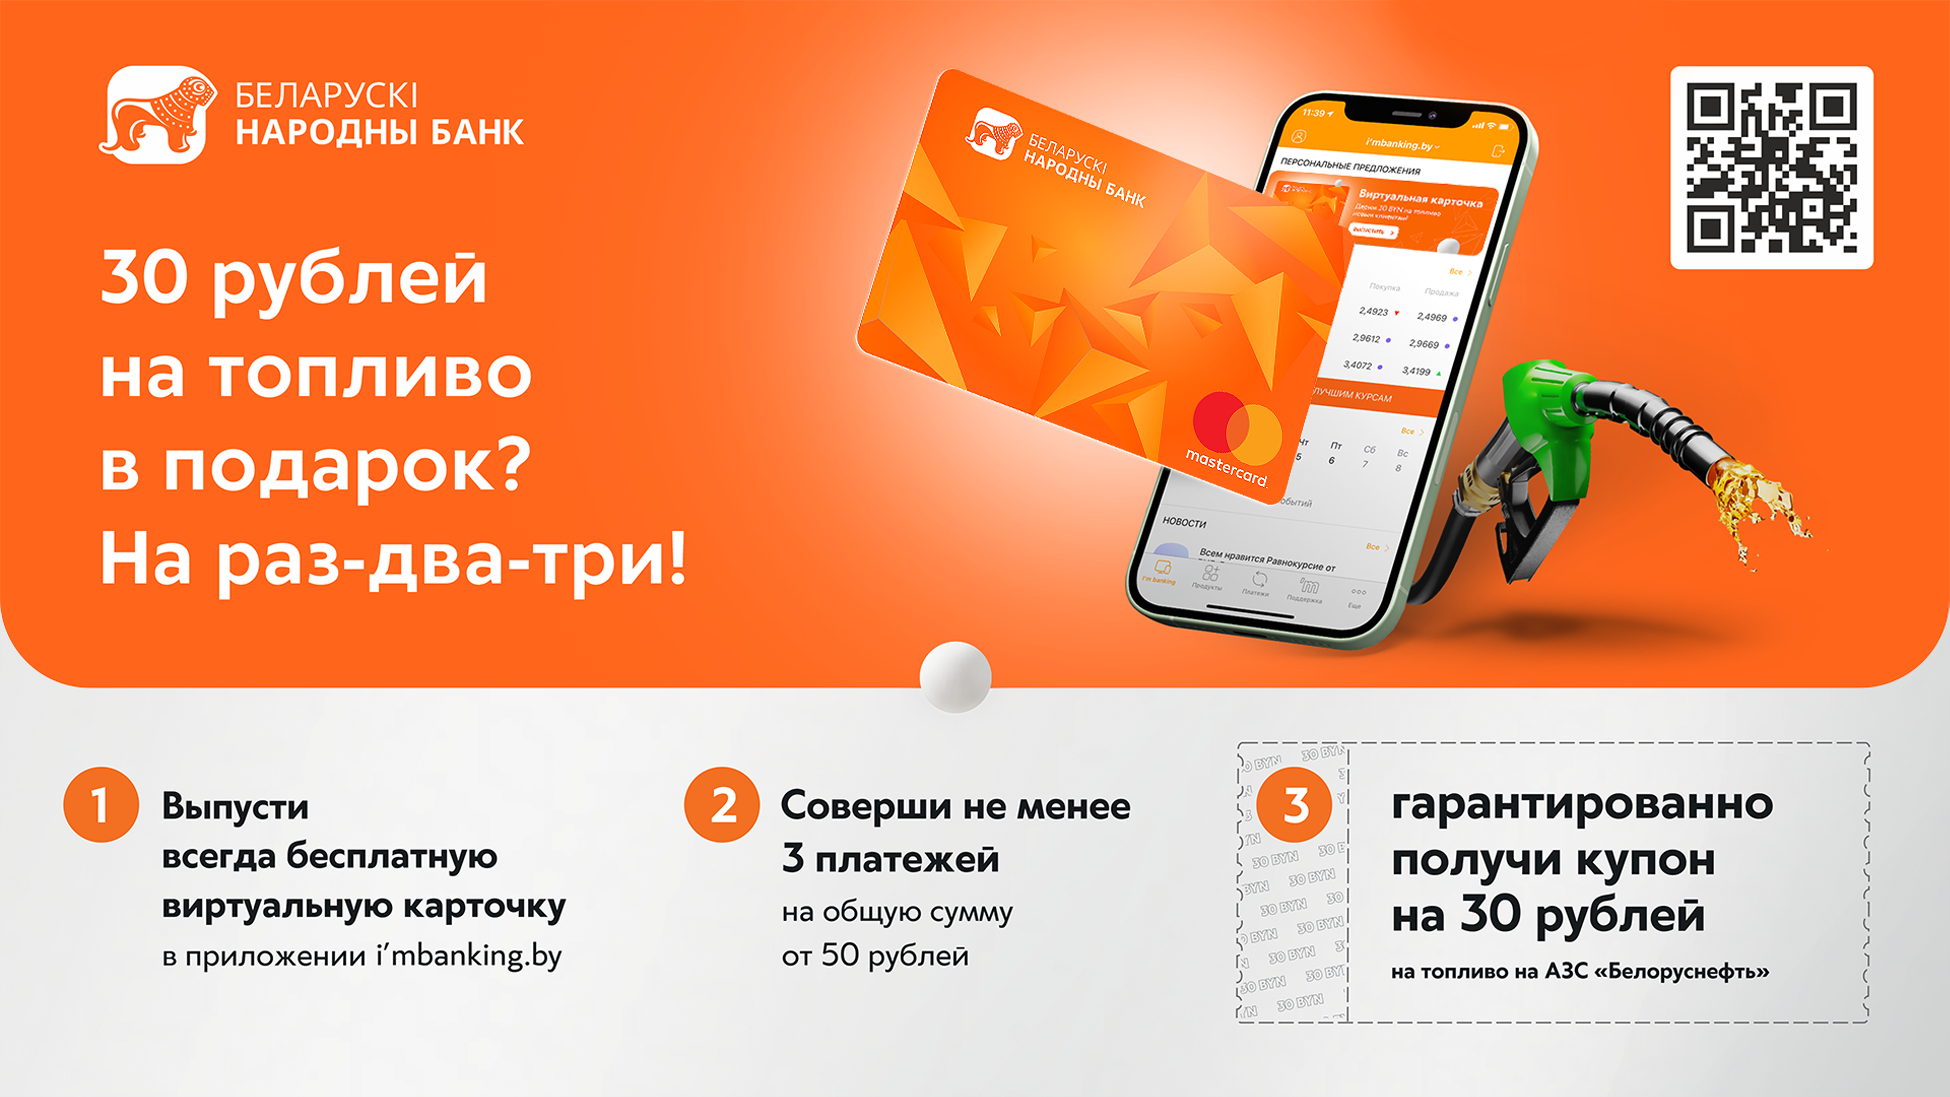 БНБ-Банк - Белоруснефть.jpg